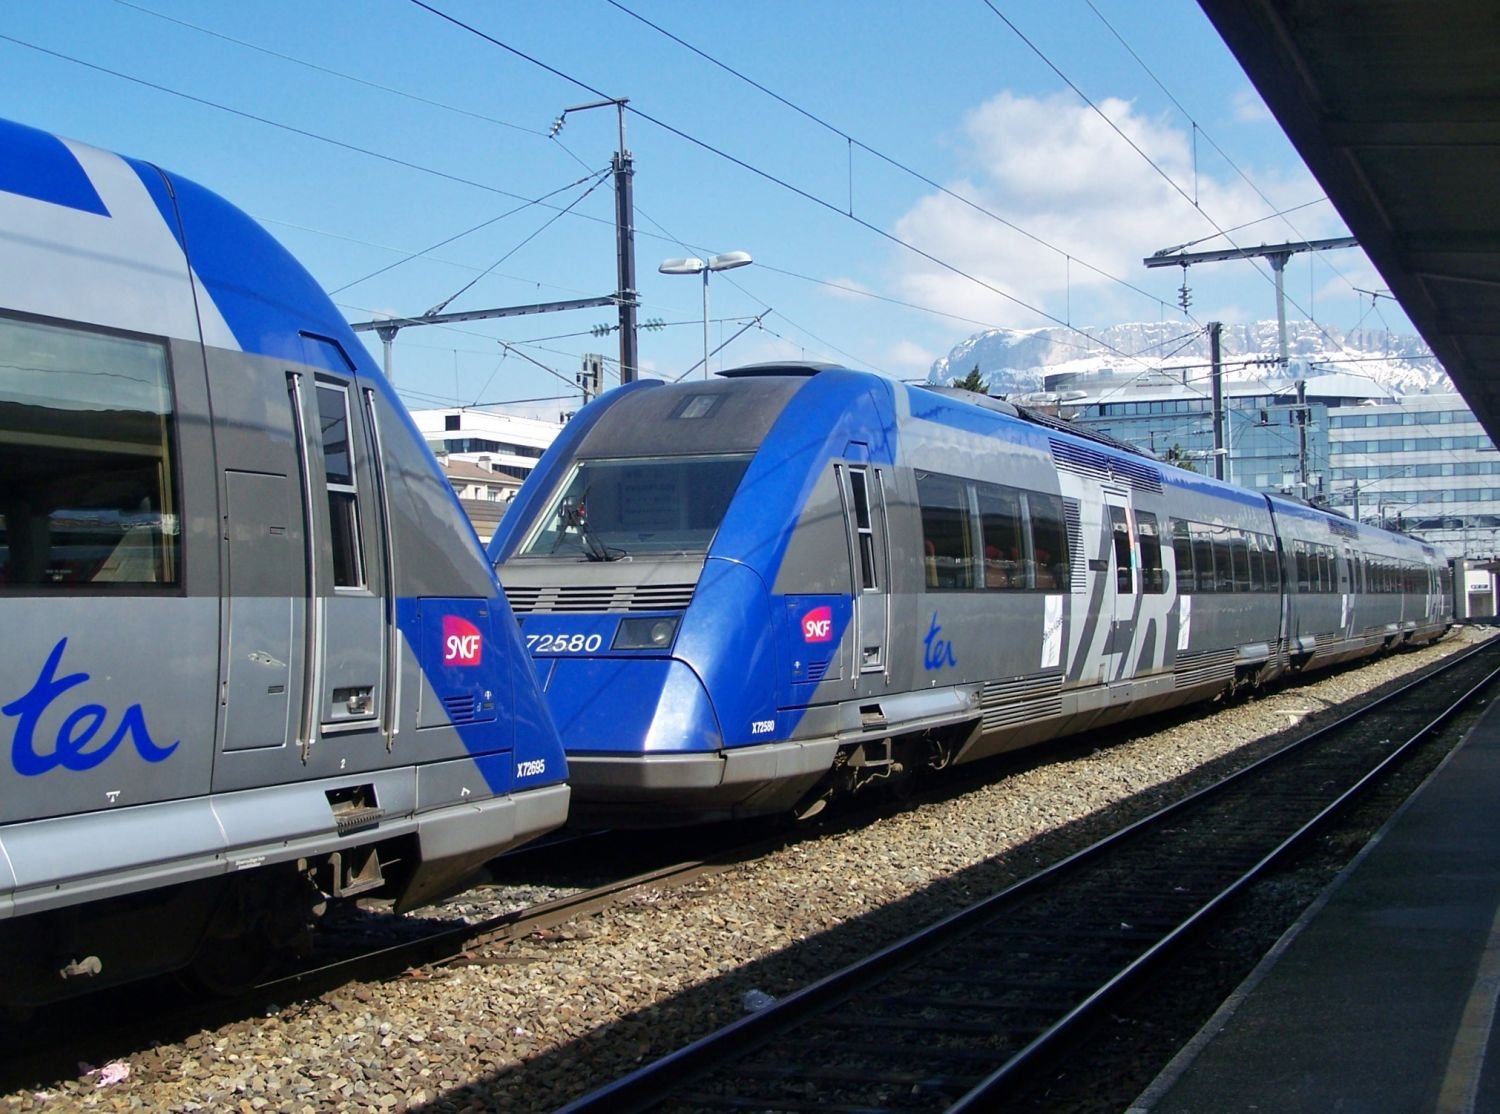 Accident de train à Strasbourg : 1 mort et 2 blessés